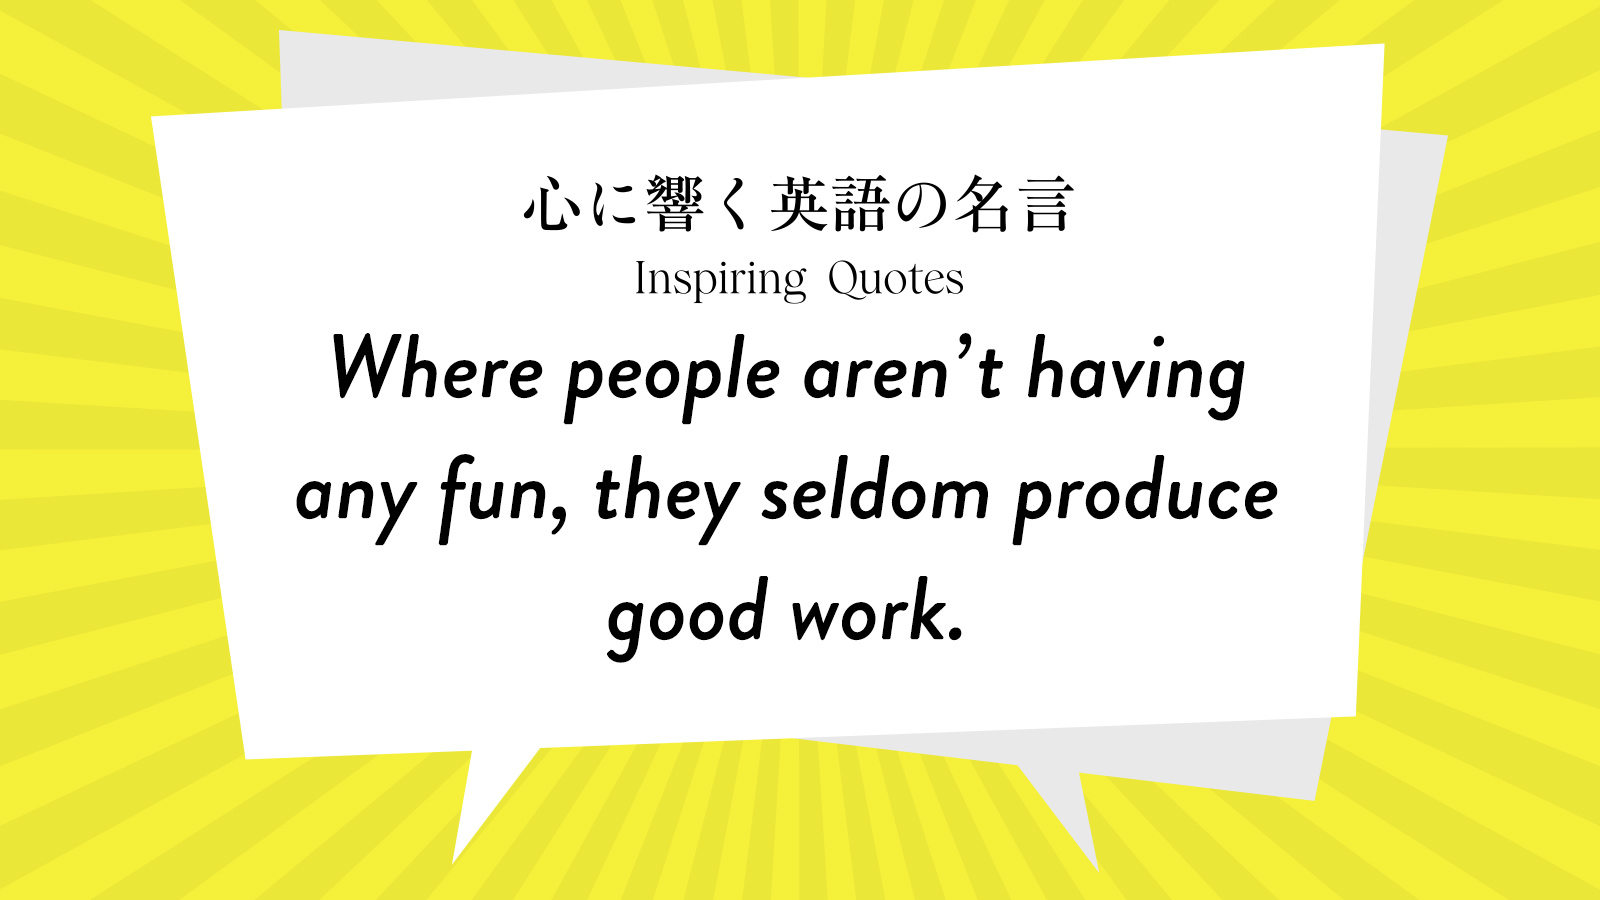 今週の名言 “Where people aren’t having any fun, they seldom produce good work.” | Inspiring Quotes: 心に響く英語の名言